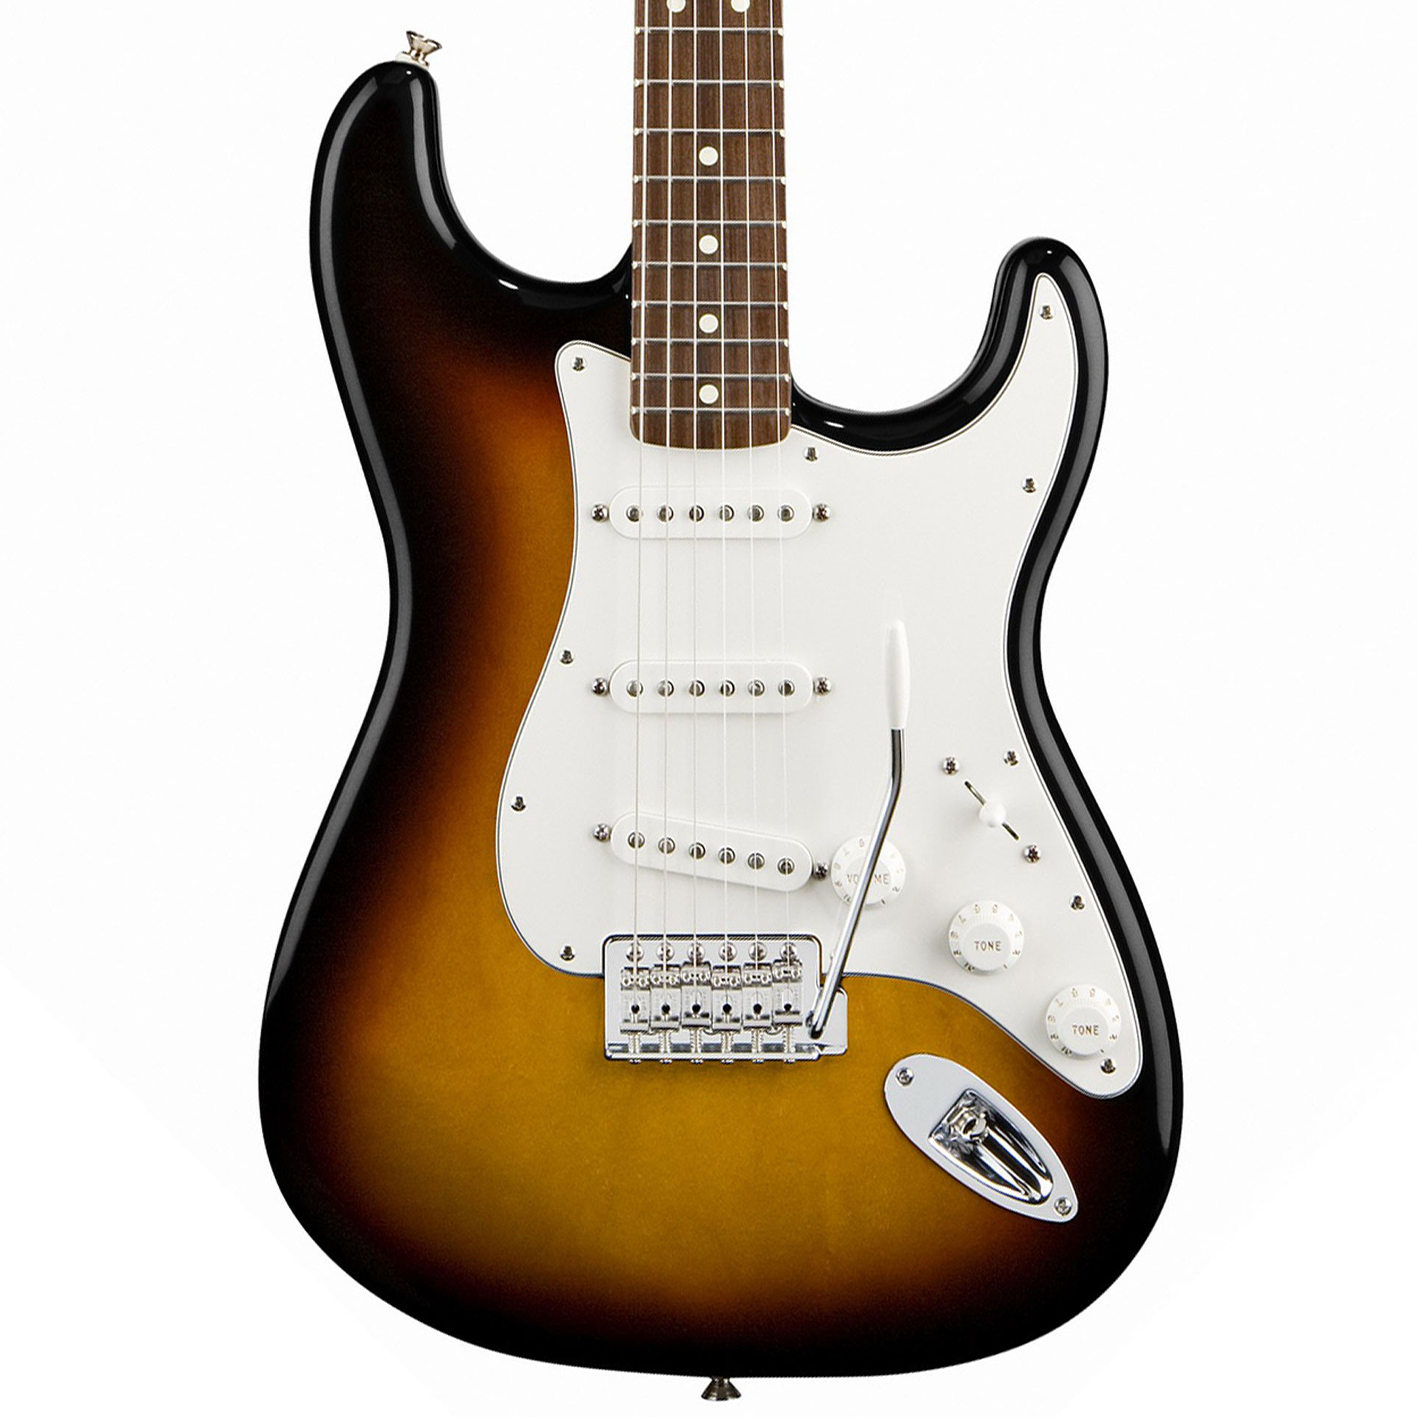  J&D ST-01 Standard Stratocaster Electric Guitar Sunburst 